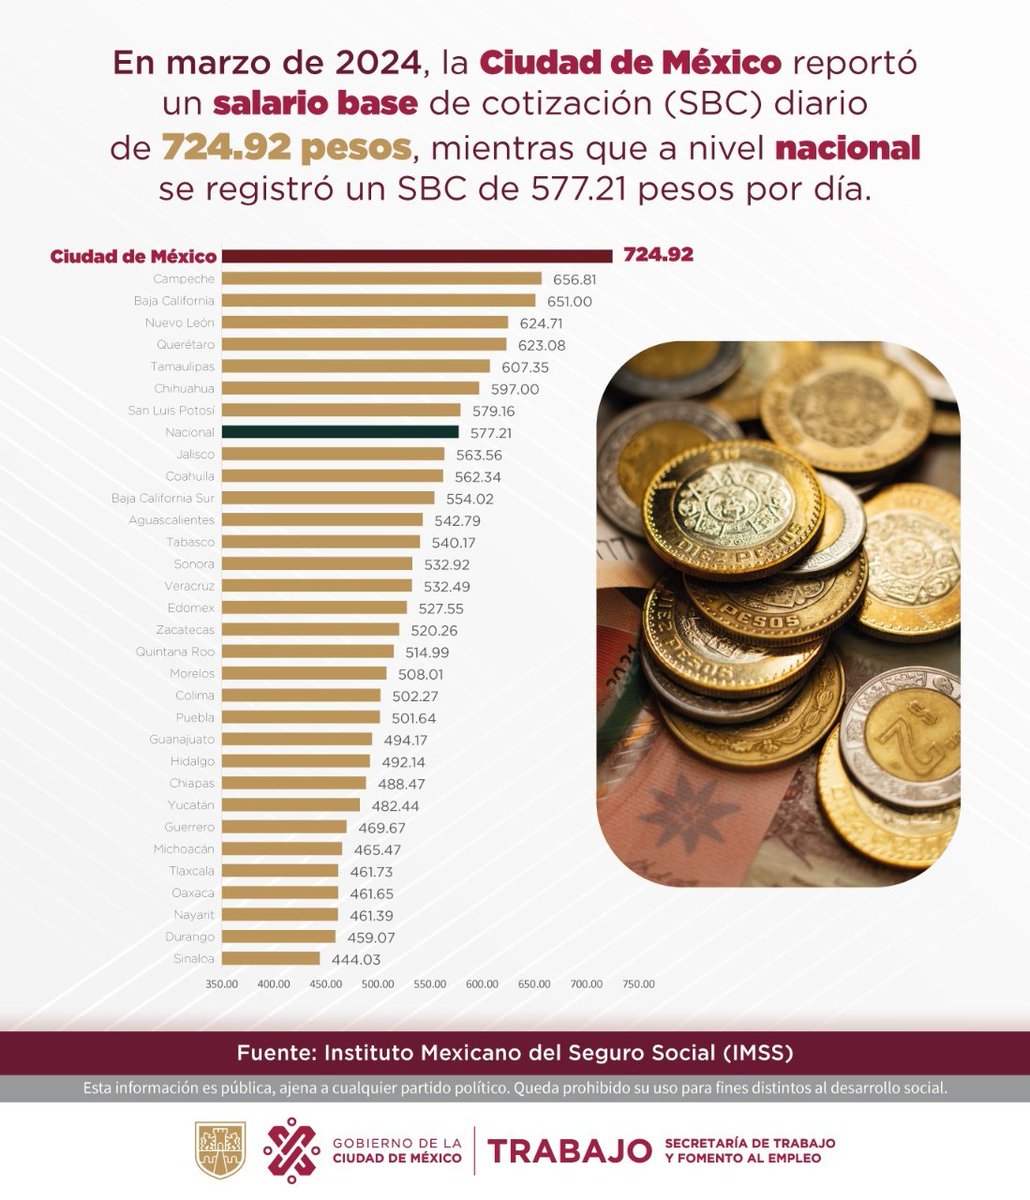 De acuerdo con datos de @Tu_IMSS, durante marzo de 2024, la Ciudad de México reportó un salario base de cotización de 724.92 pesos diarios.
#TrabajoEnLaCiudad #DíaDelTrabajo